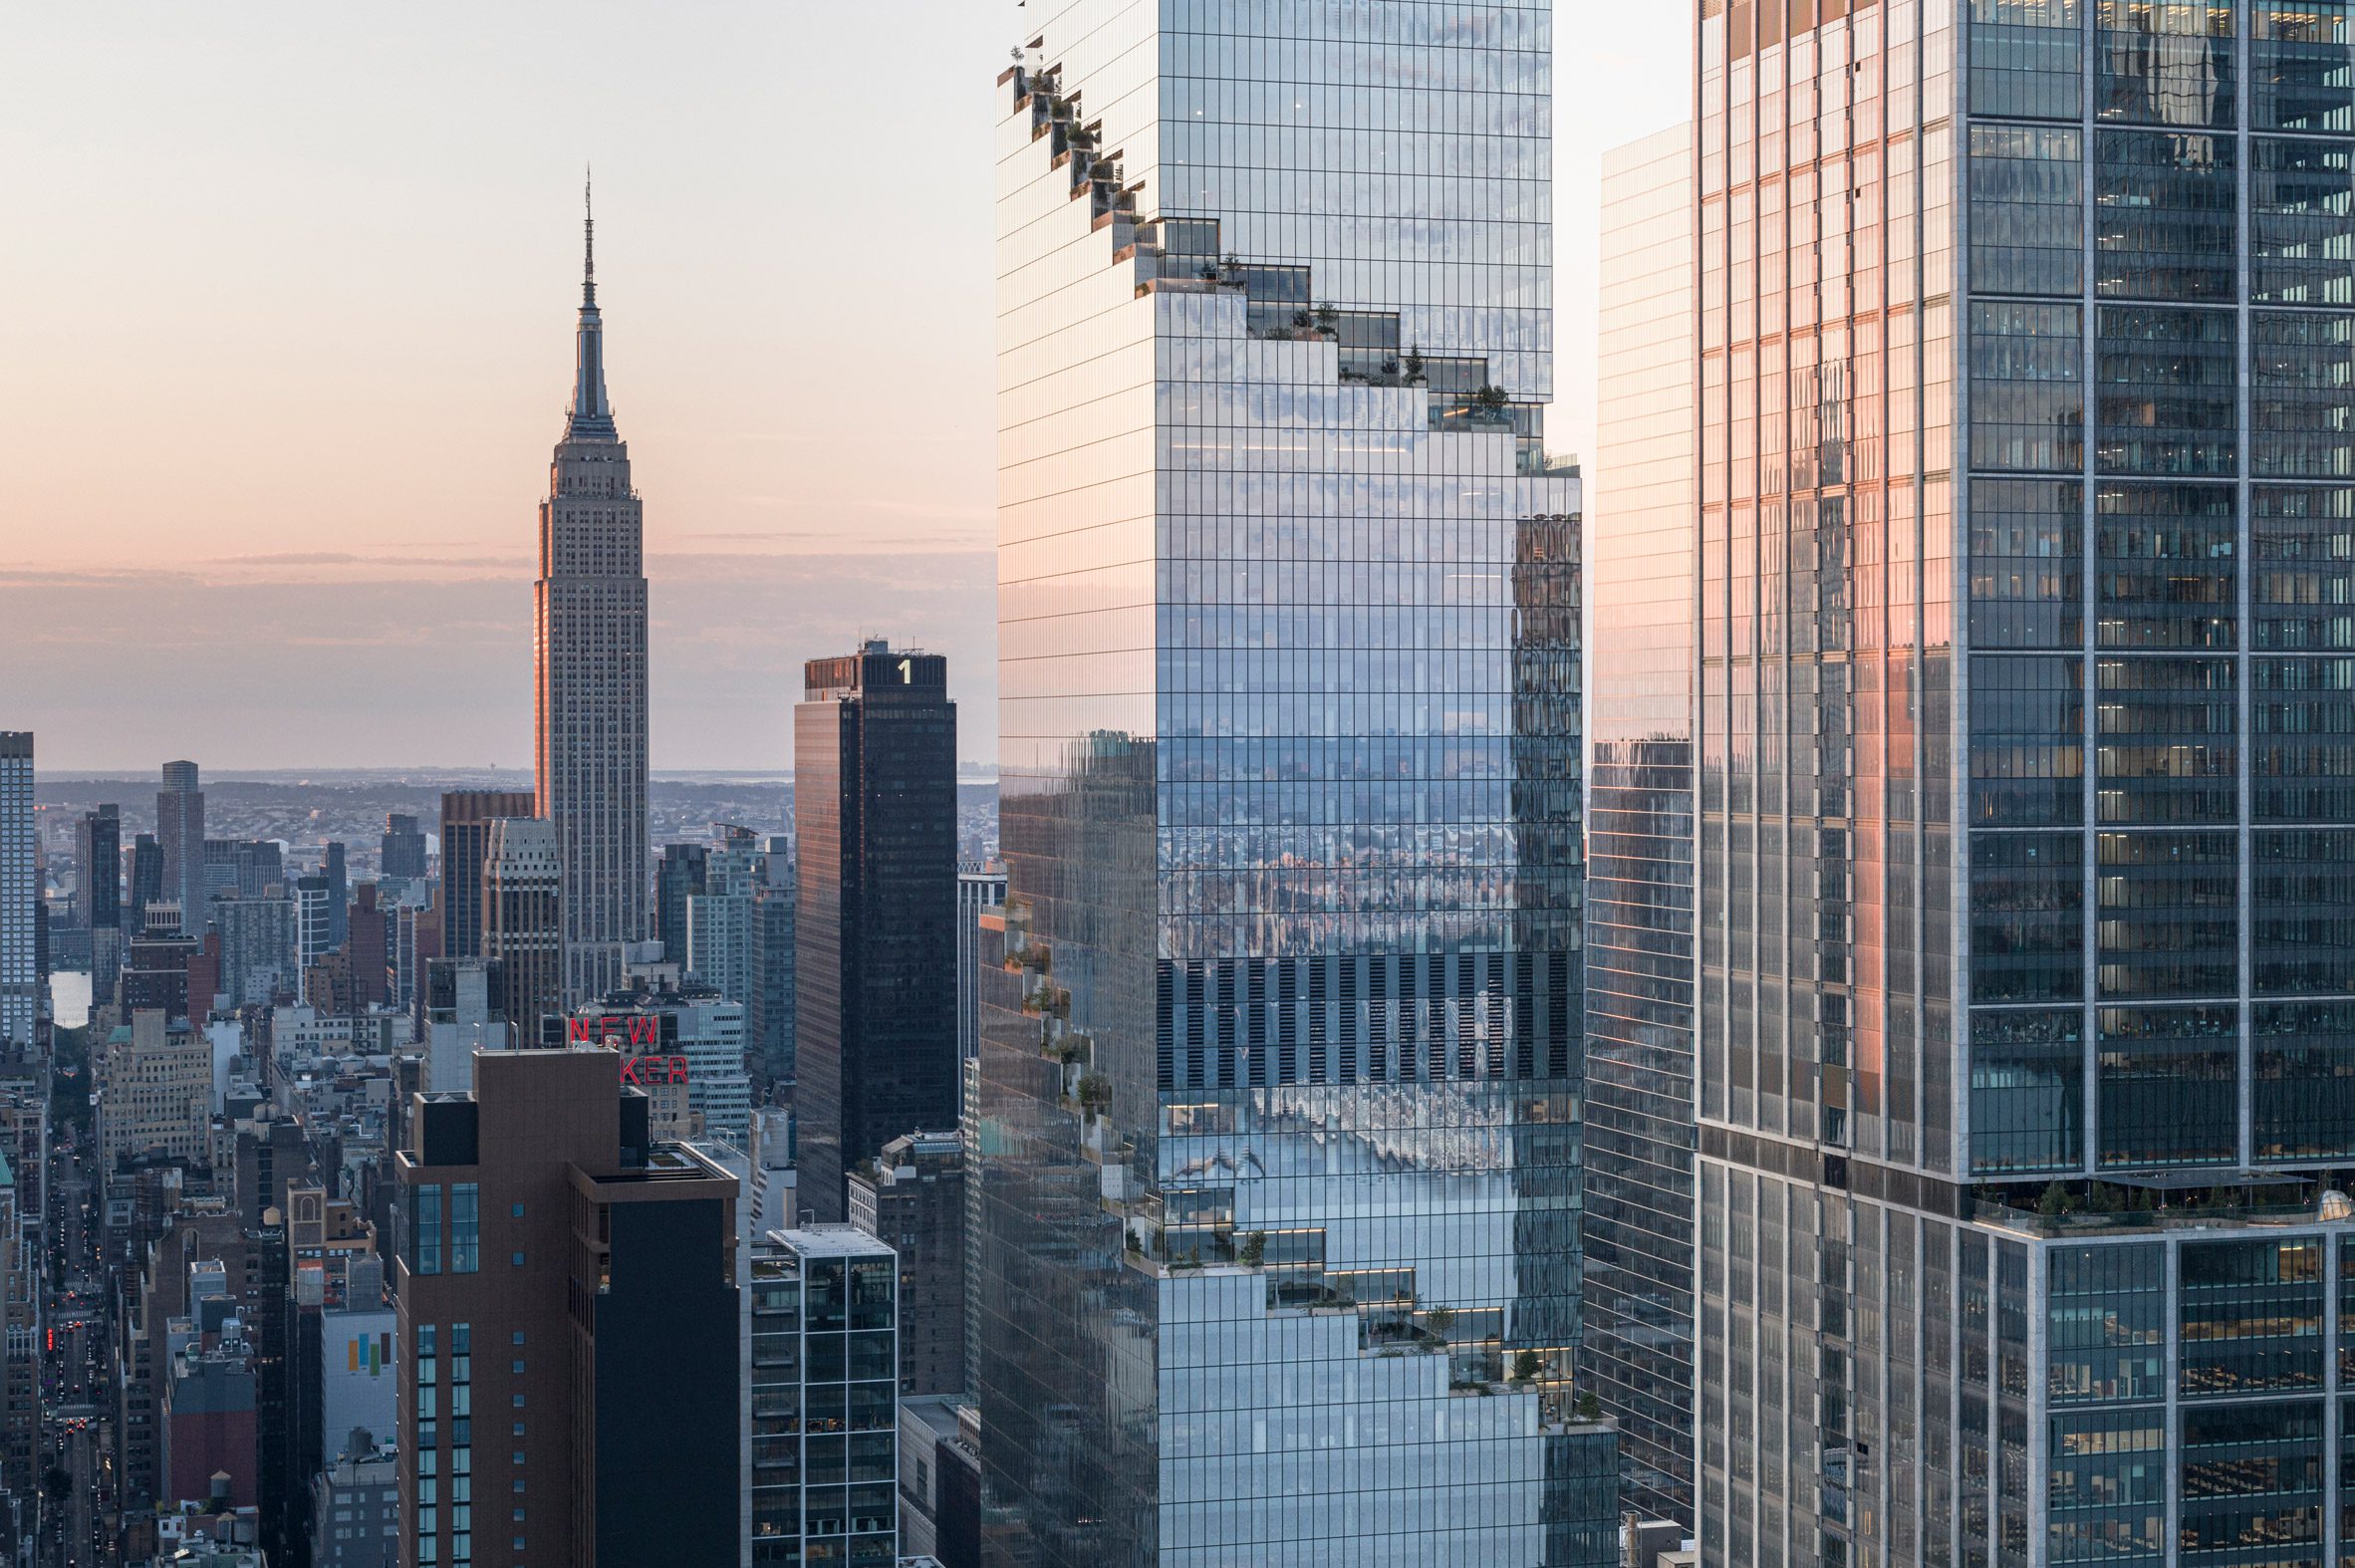 New York City - The Skyscraper Center